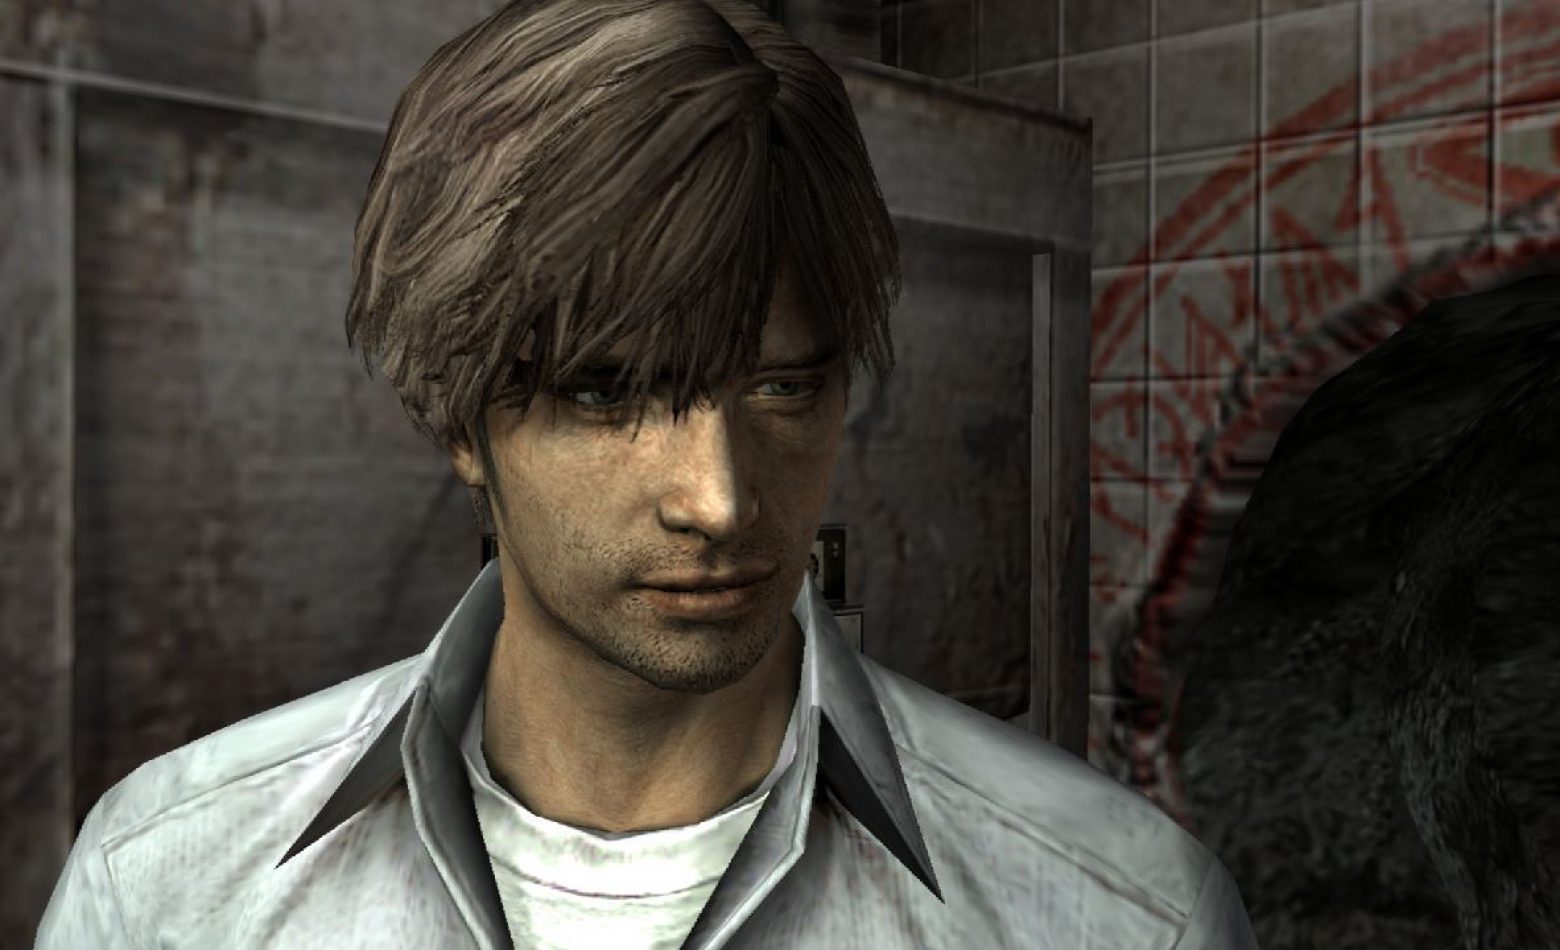 Explorando mais mundos em Silent Hill 4 [Gameplay]